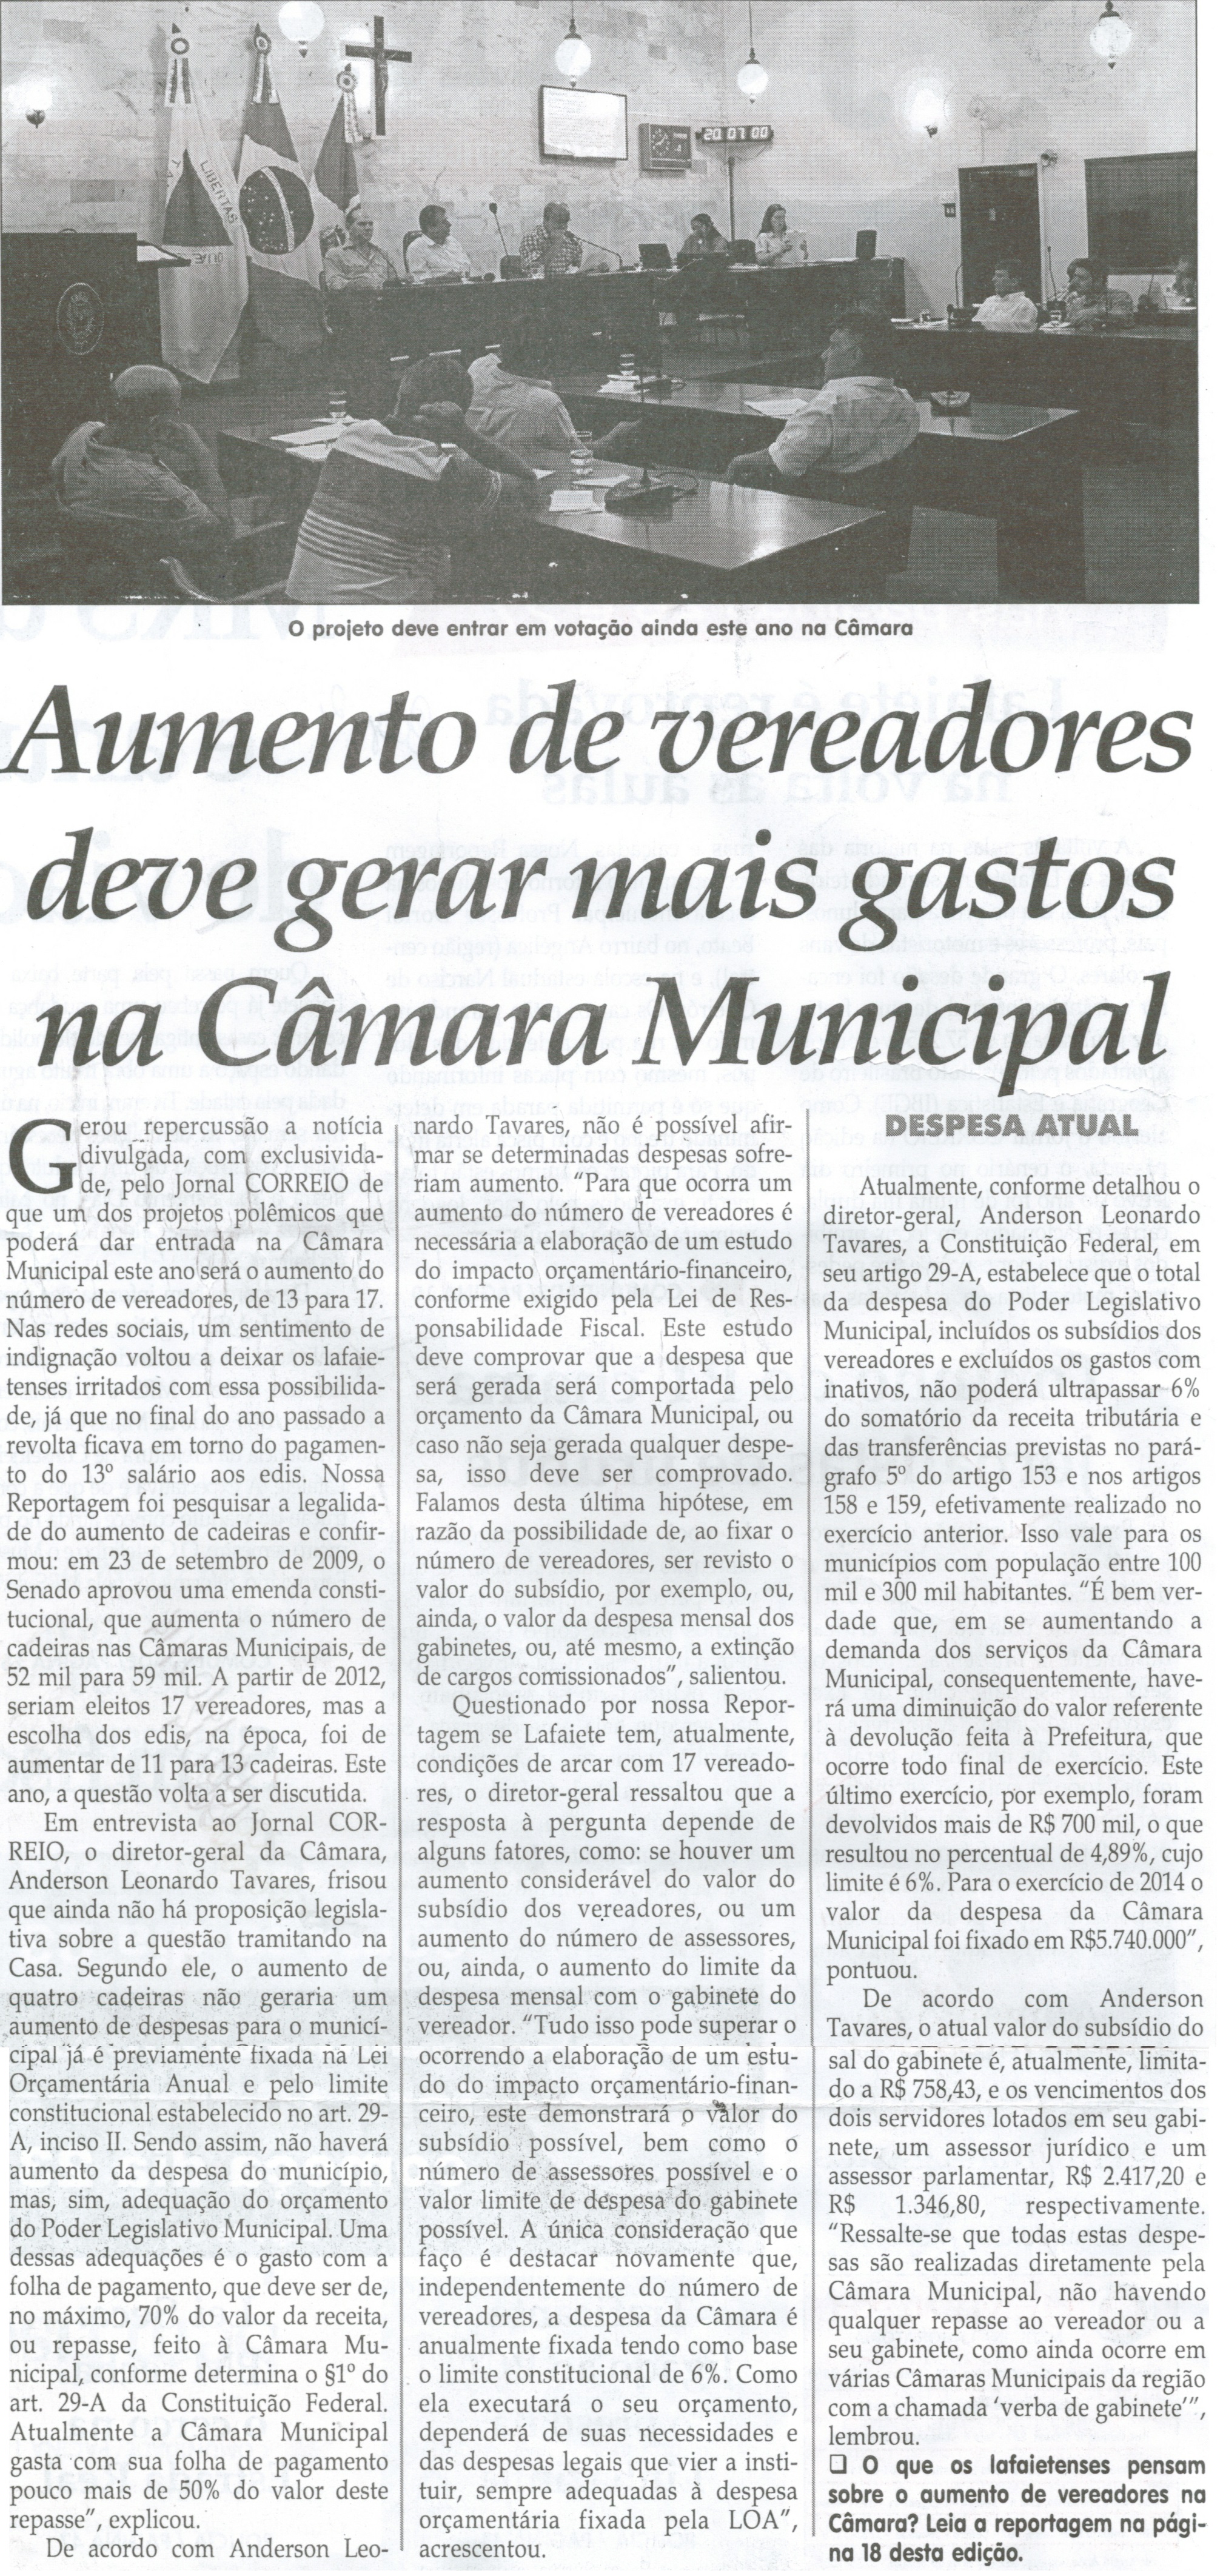 Aumento de vereadores deve gerar mais gastos na Câmara Municipal. Jornal Correio da Cidade, Conselheiro Lafaiete, 08 fev. 2014, p. 2.